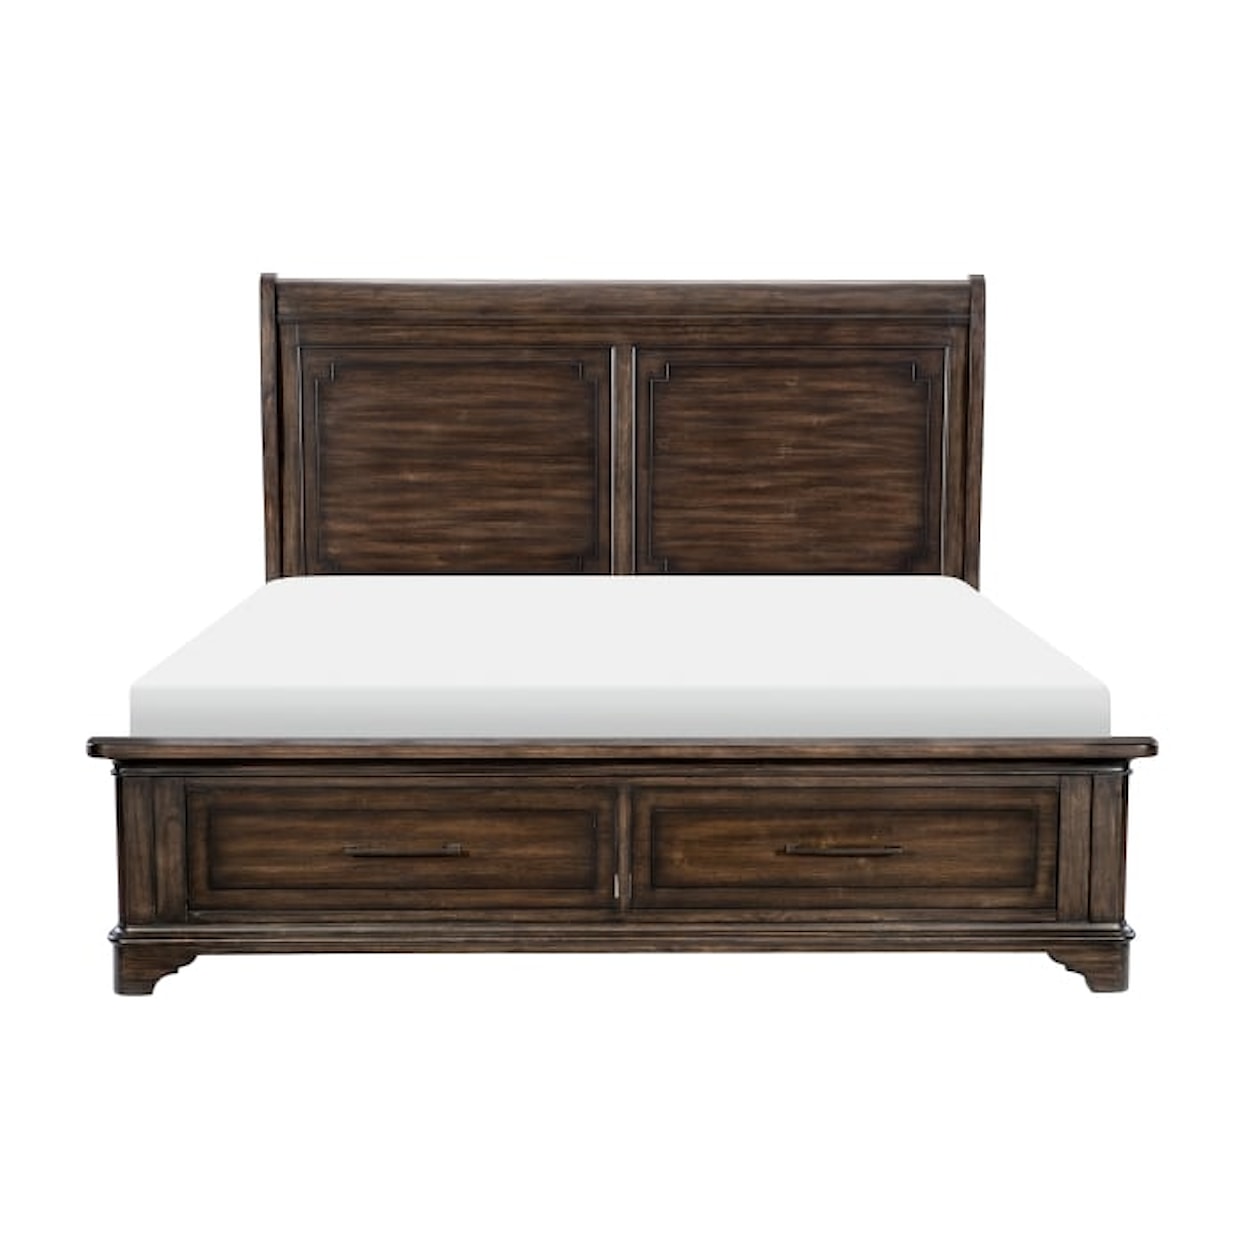 Homelegance Furniture Boone 4-Piece Queen Bedroom Set